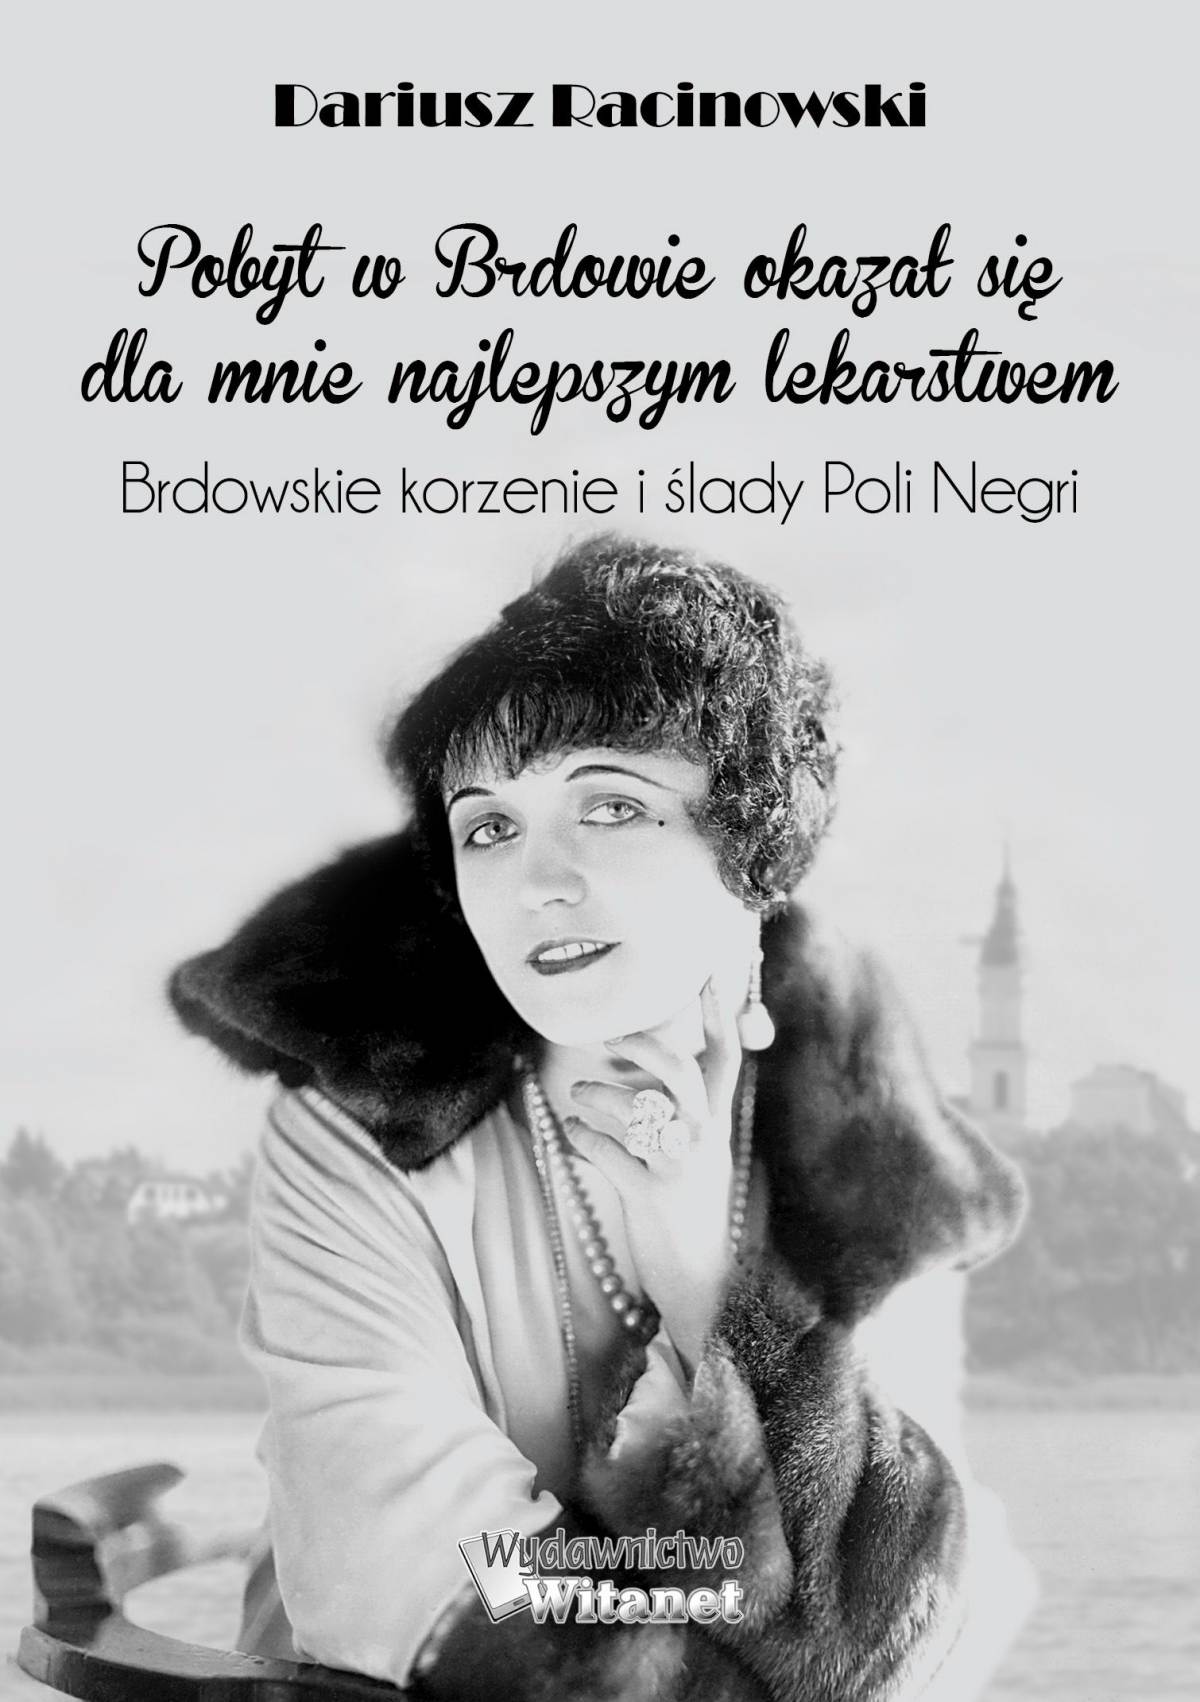 Okładka:Pobyt w Brdowie okazał się dla mnie najlepszym lekarstwem. Brdowskie korzenie i ślady Poli Negri. 